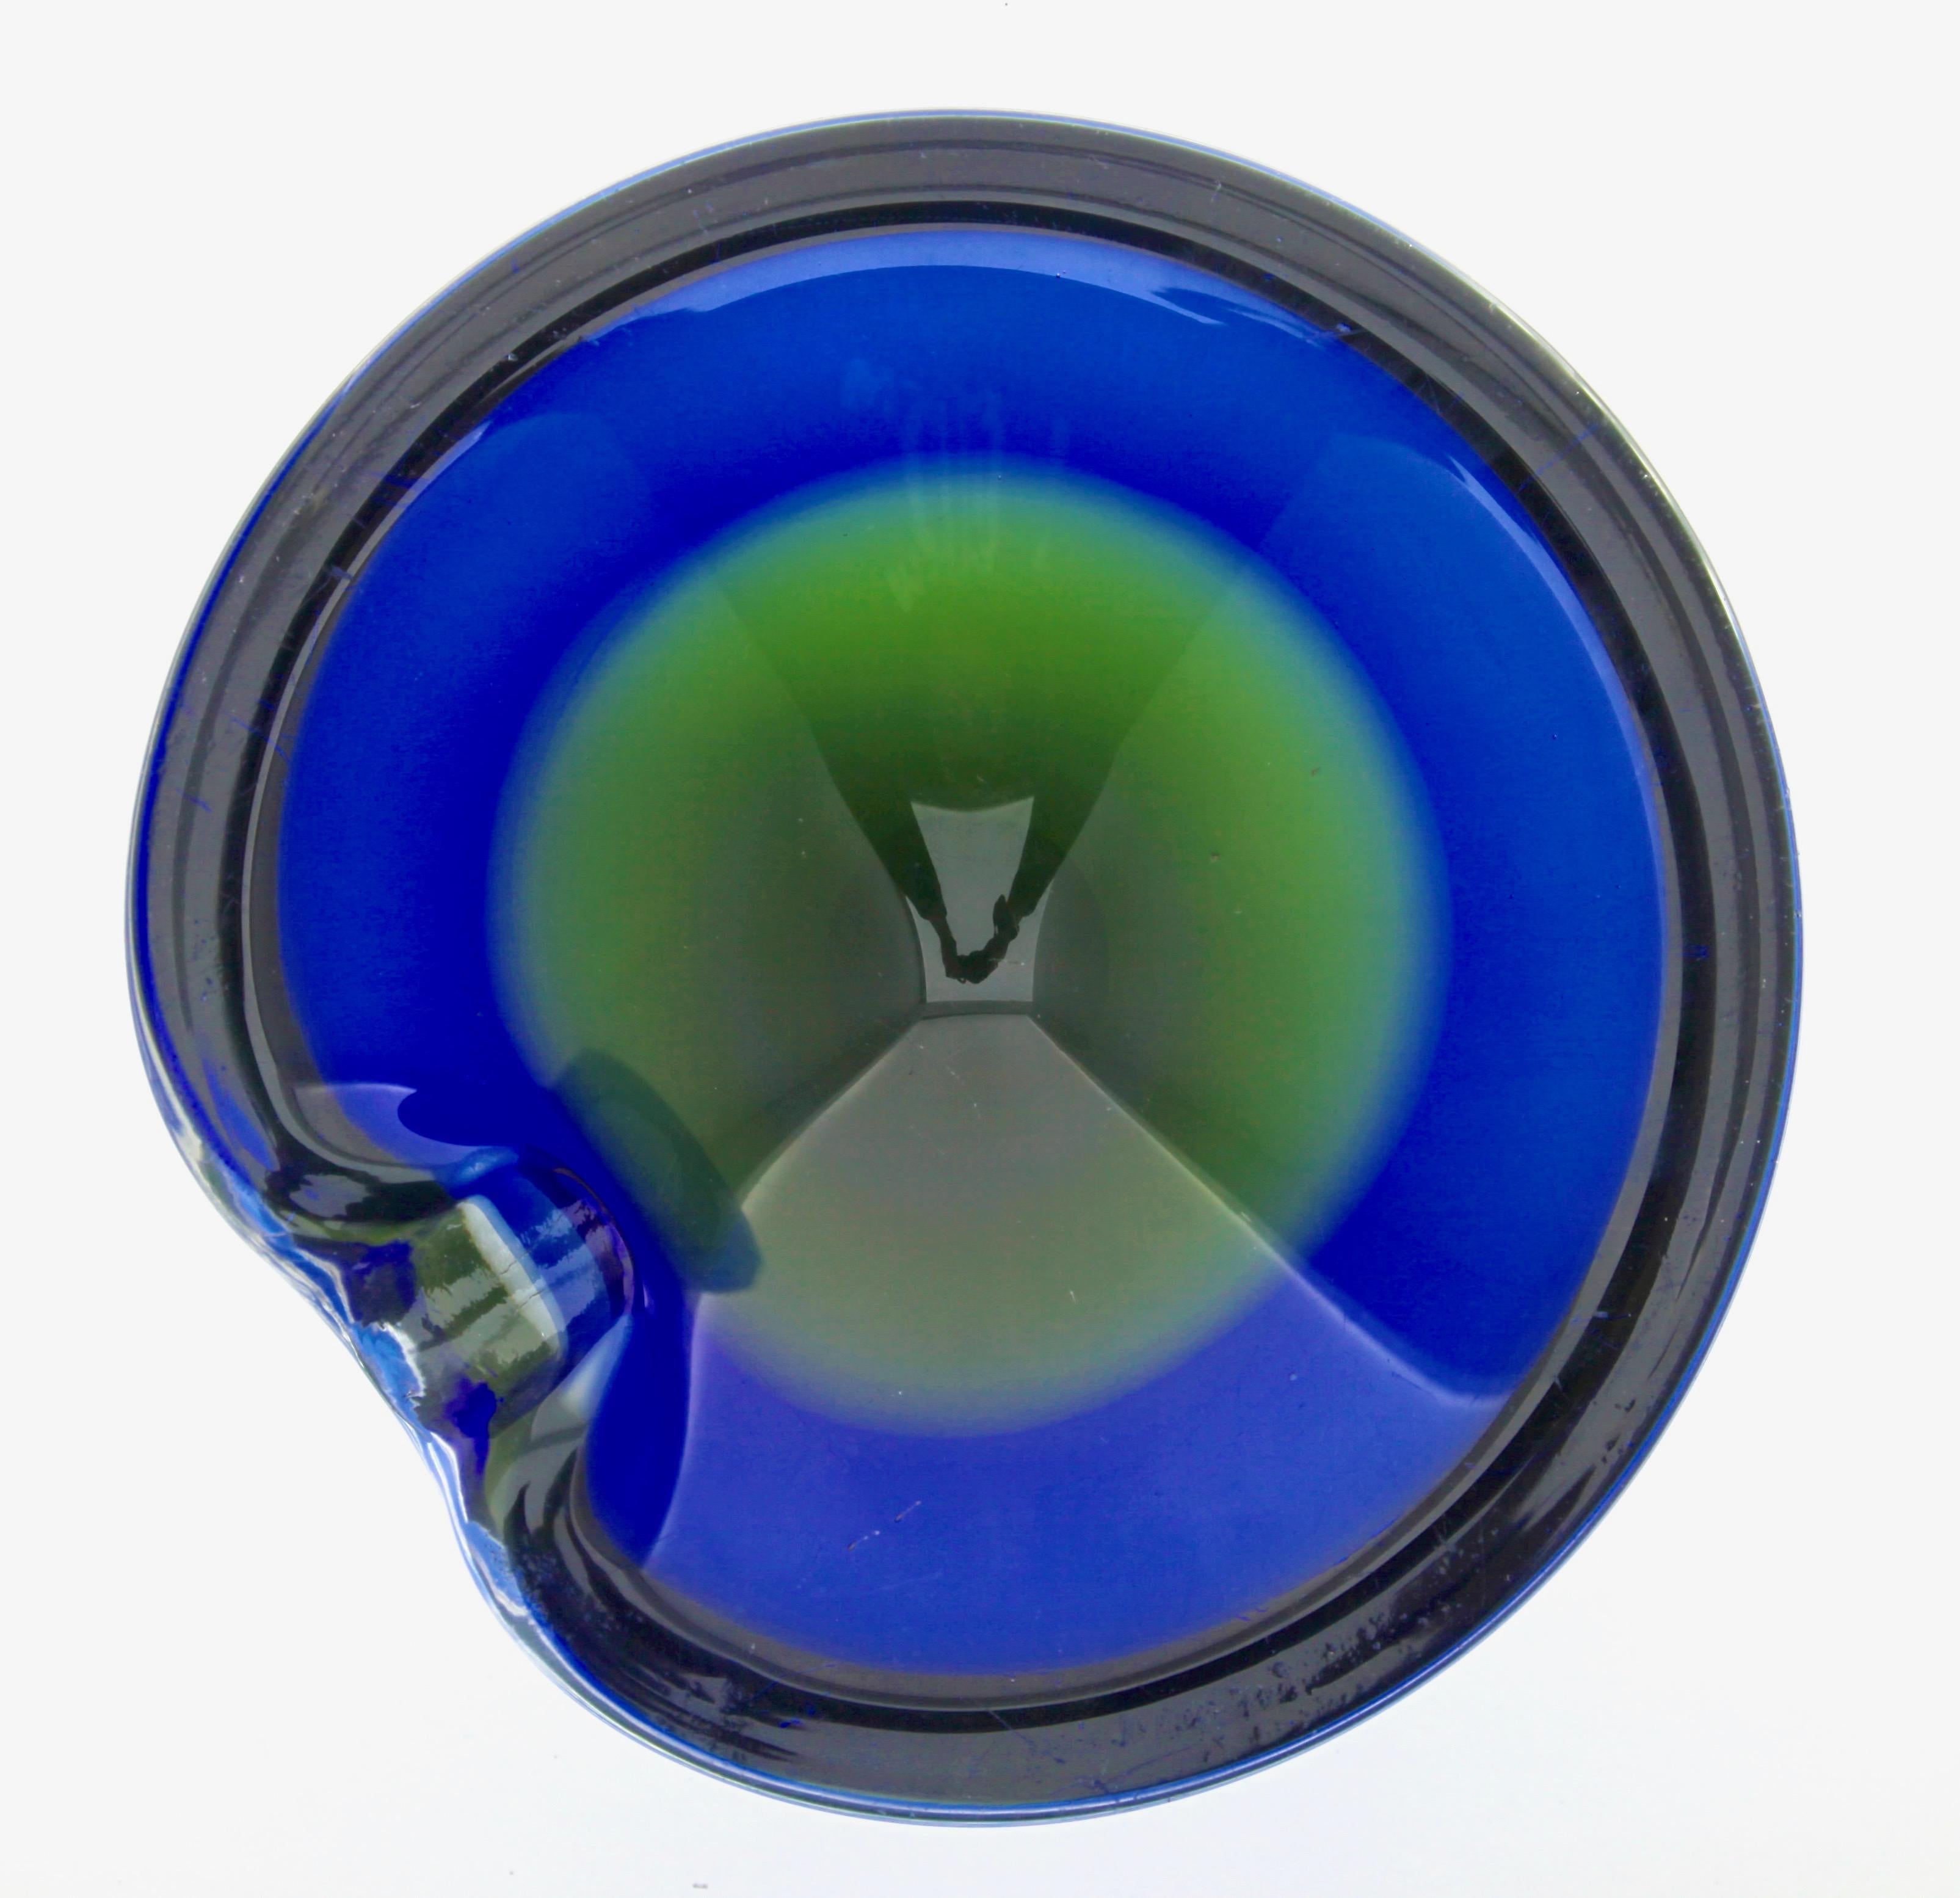 Le bol a une couleur sommerso dans le verre de bleu et de vert. 
Le bord bleu repose sur le verre sommerso de couleur verte.
Fantastique bol sculptural en verre géodique de forme libre, probablement conçu par Gino Cenedese.